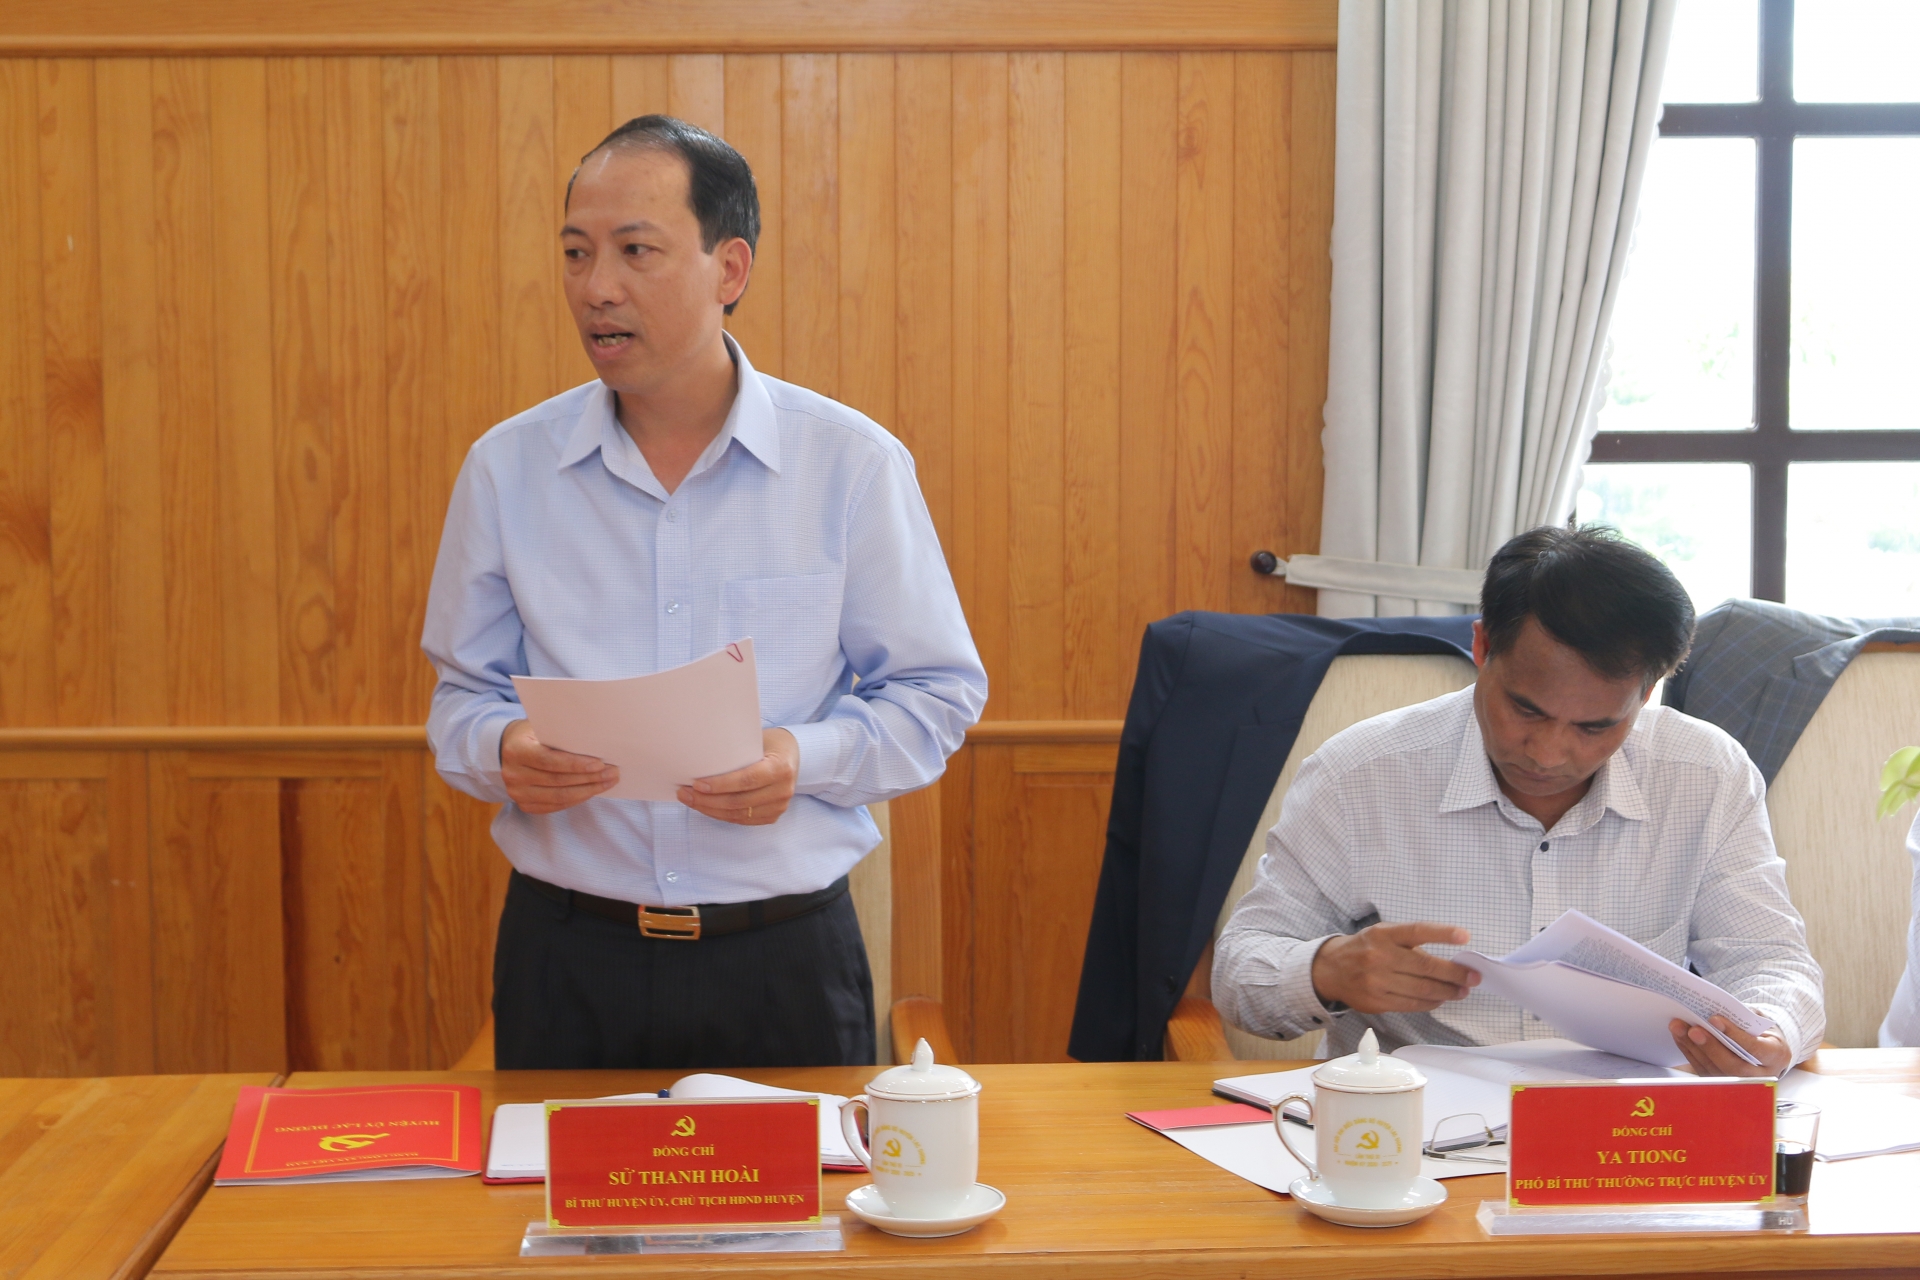 Đồng chí Sử Thanh Hoài – Bí thư Huyện ủy, Chủ tịch HĐND huyện Lạc Dương báo cáo tại buổi làm việc